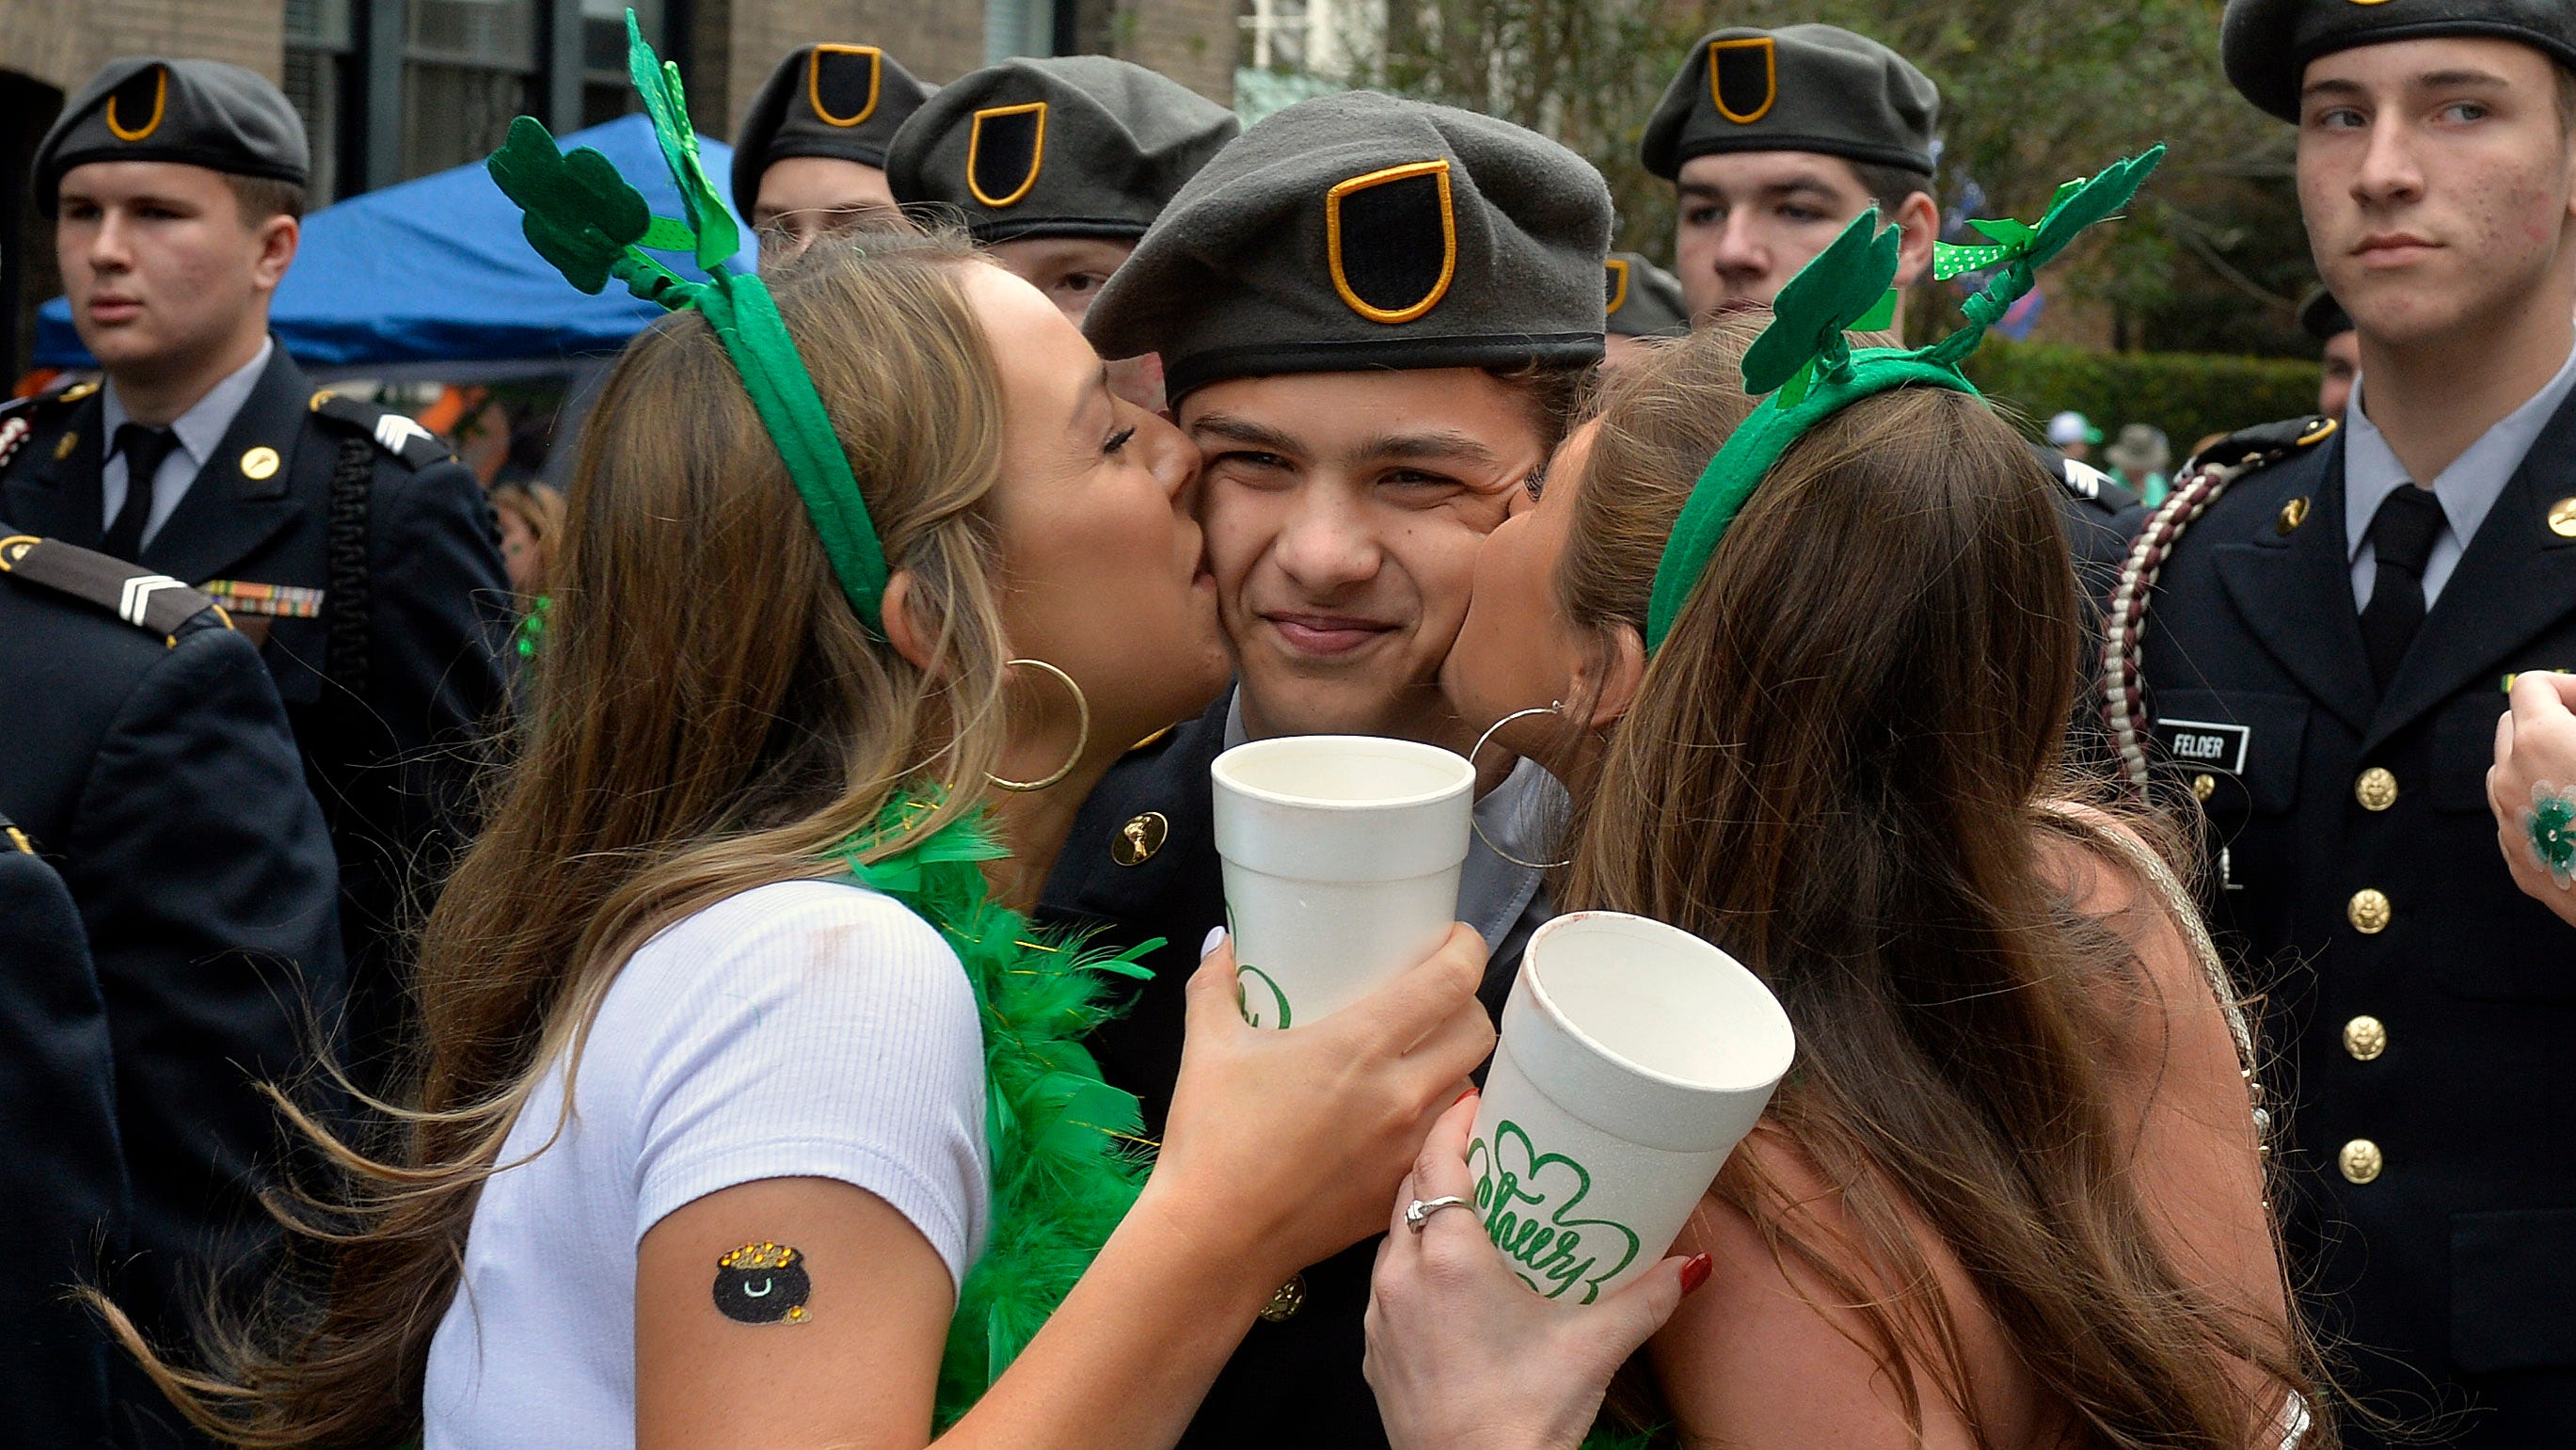 2022 Savannah St. Patrick's Day parade No kissing allowed, per city